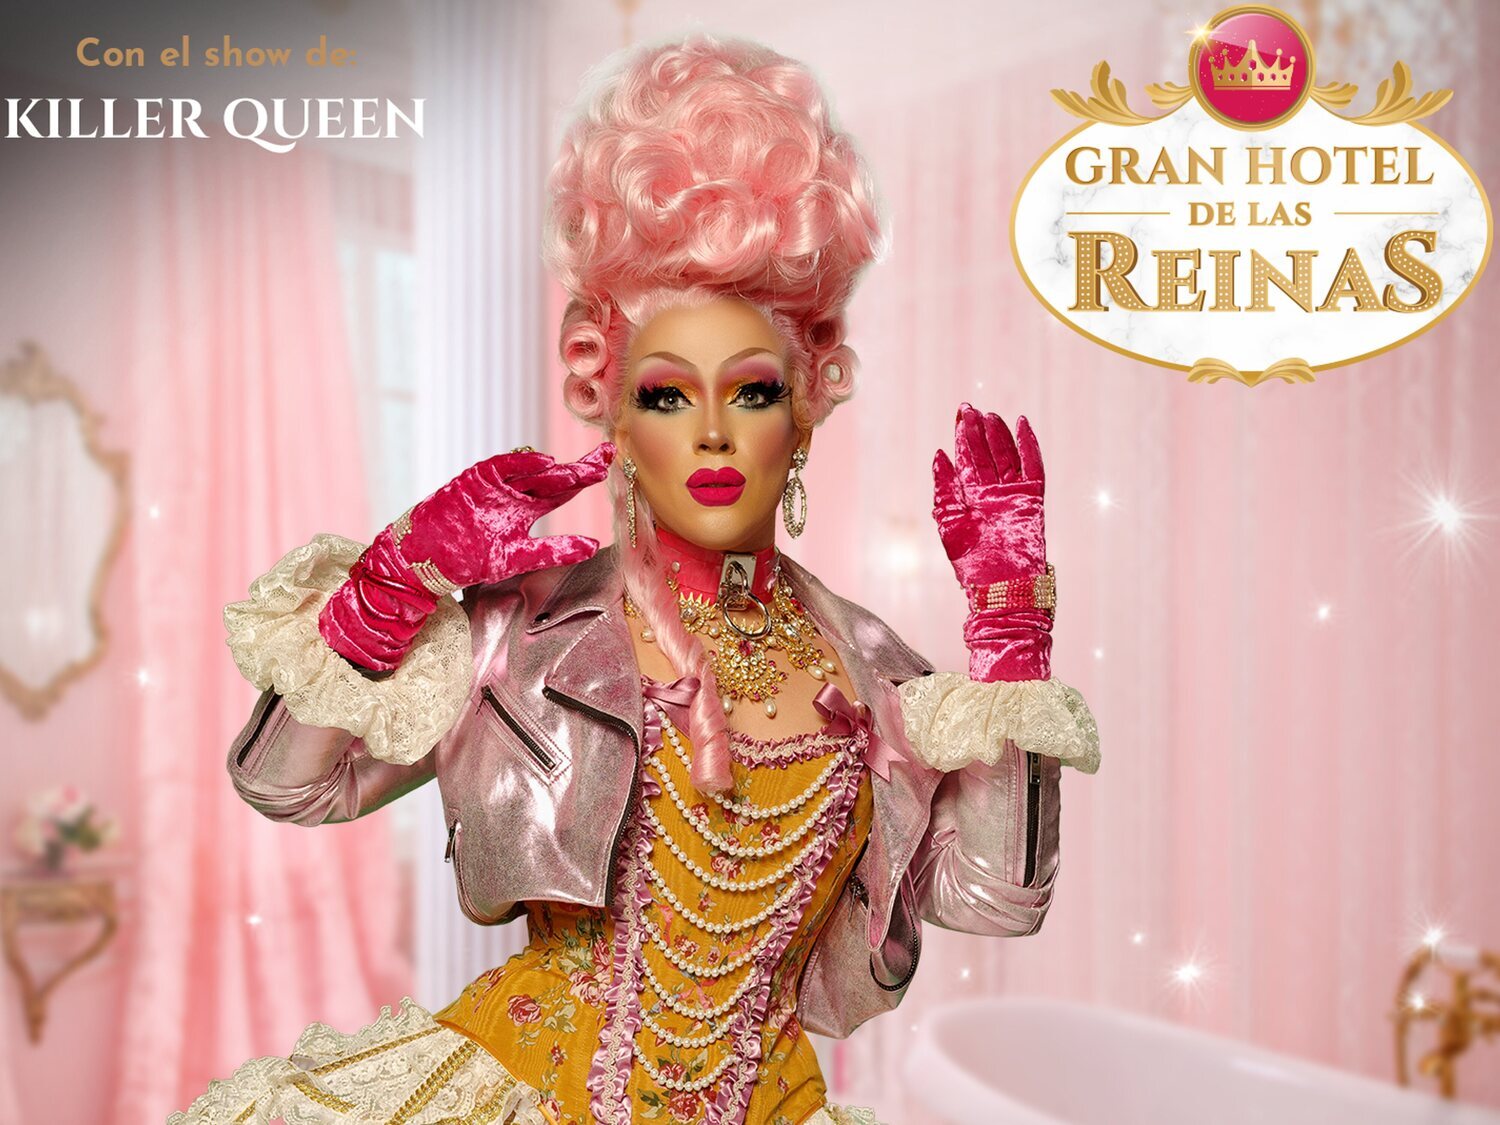 Killer Queen: "El 'Gran Hotel de las Reinas' es el sueño más grande que una artista drag puede tener"